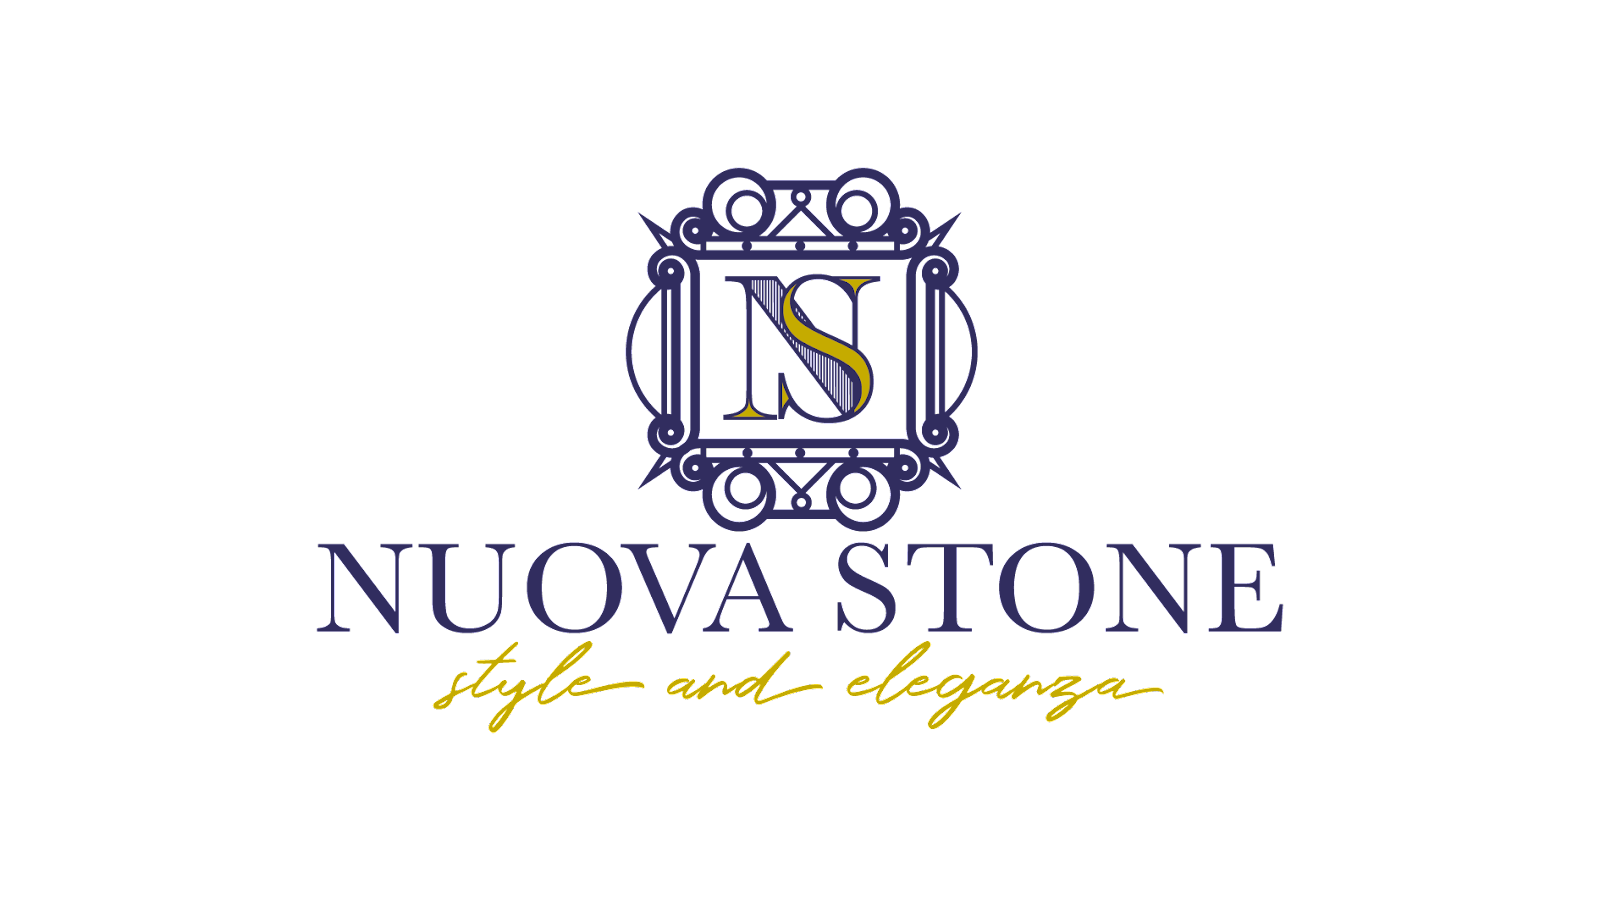 Nuova Stone logo.